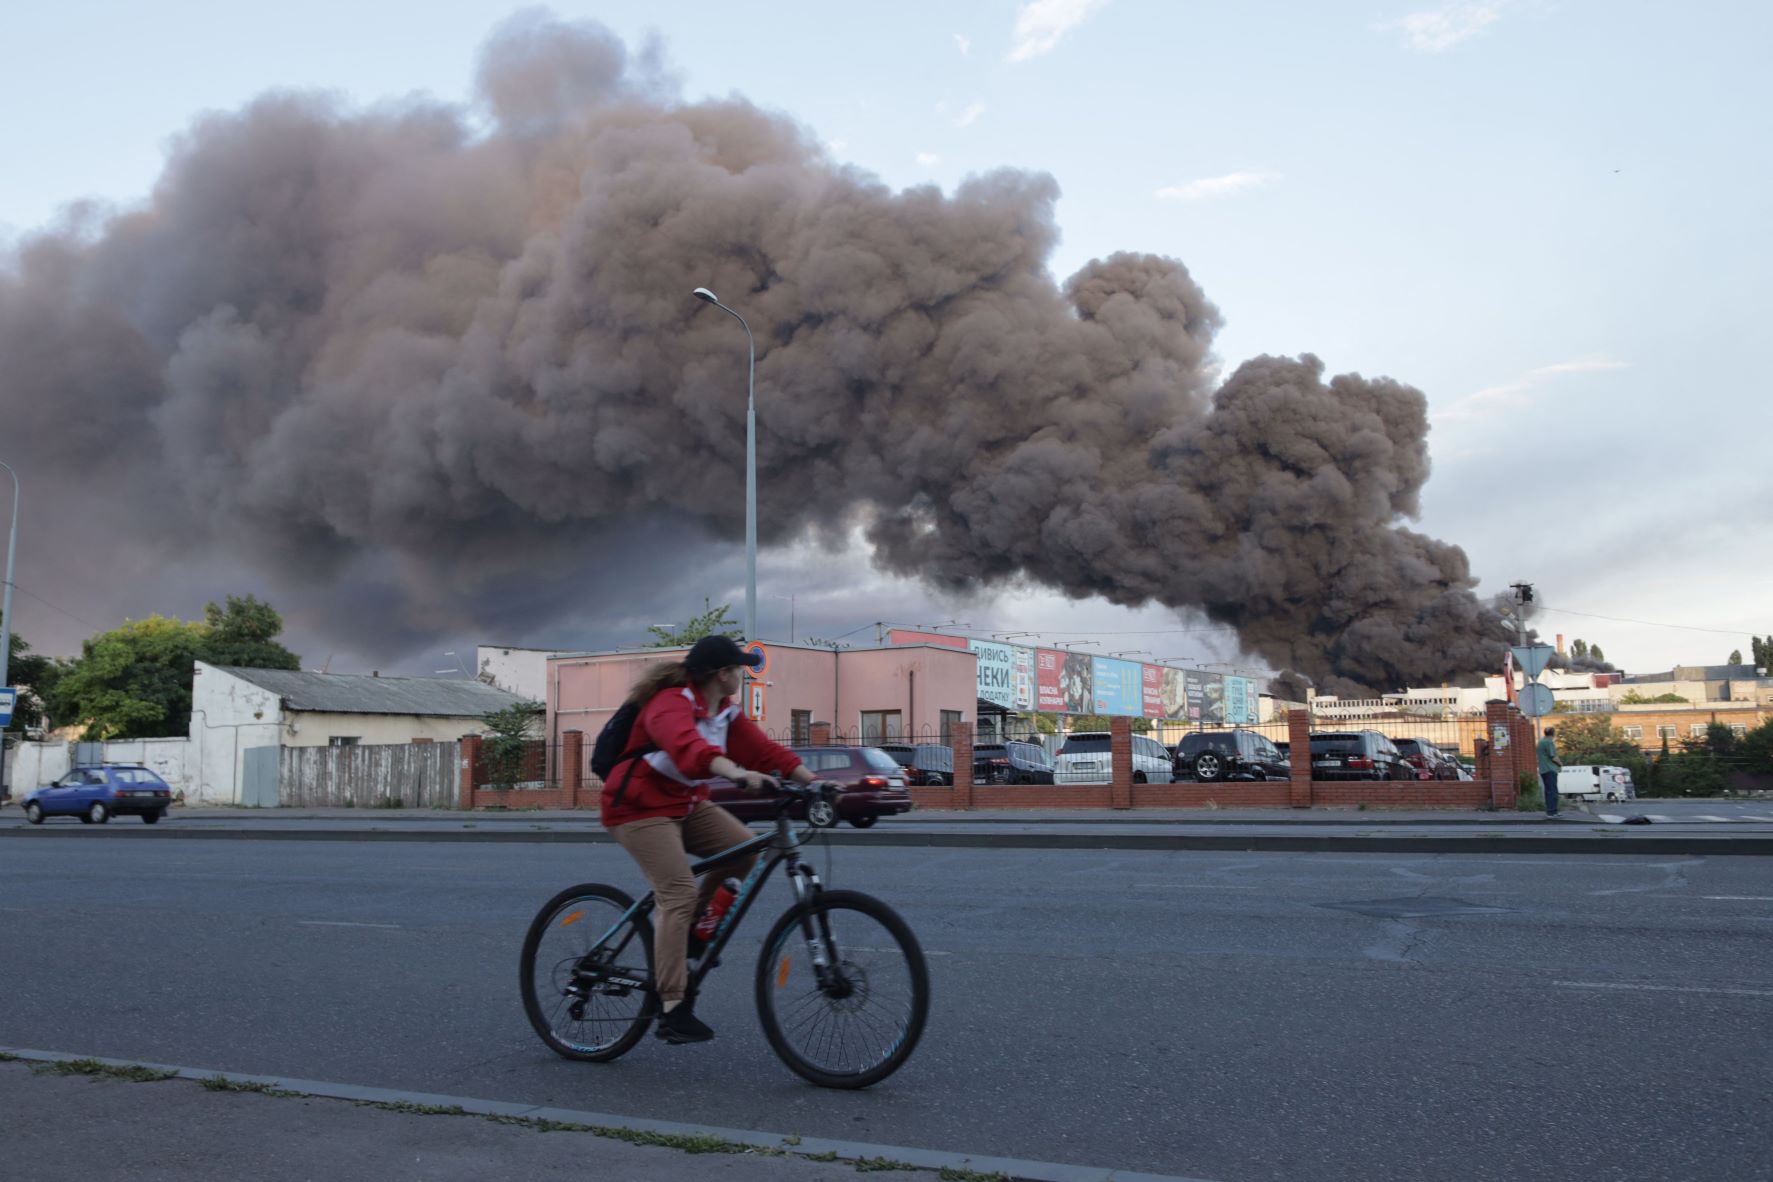 امرأة تقود دراجة هوائية قرب مكان يتصاعد منه دخان حريق نجم عن صاروخ روسي قصف شركة للتجارة والصناعة في أوديسا خلال الغزو الروسي لأوكرانيا بتاريخ 16 يوليو 2022 